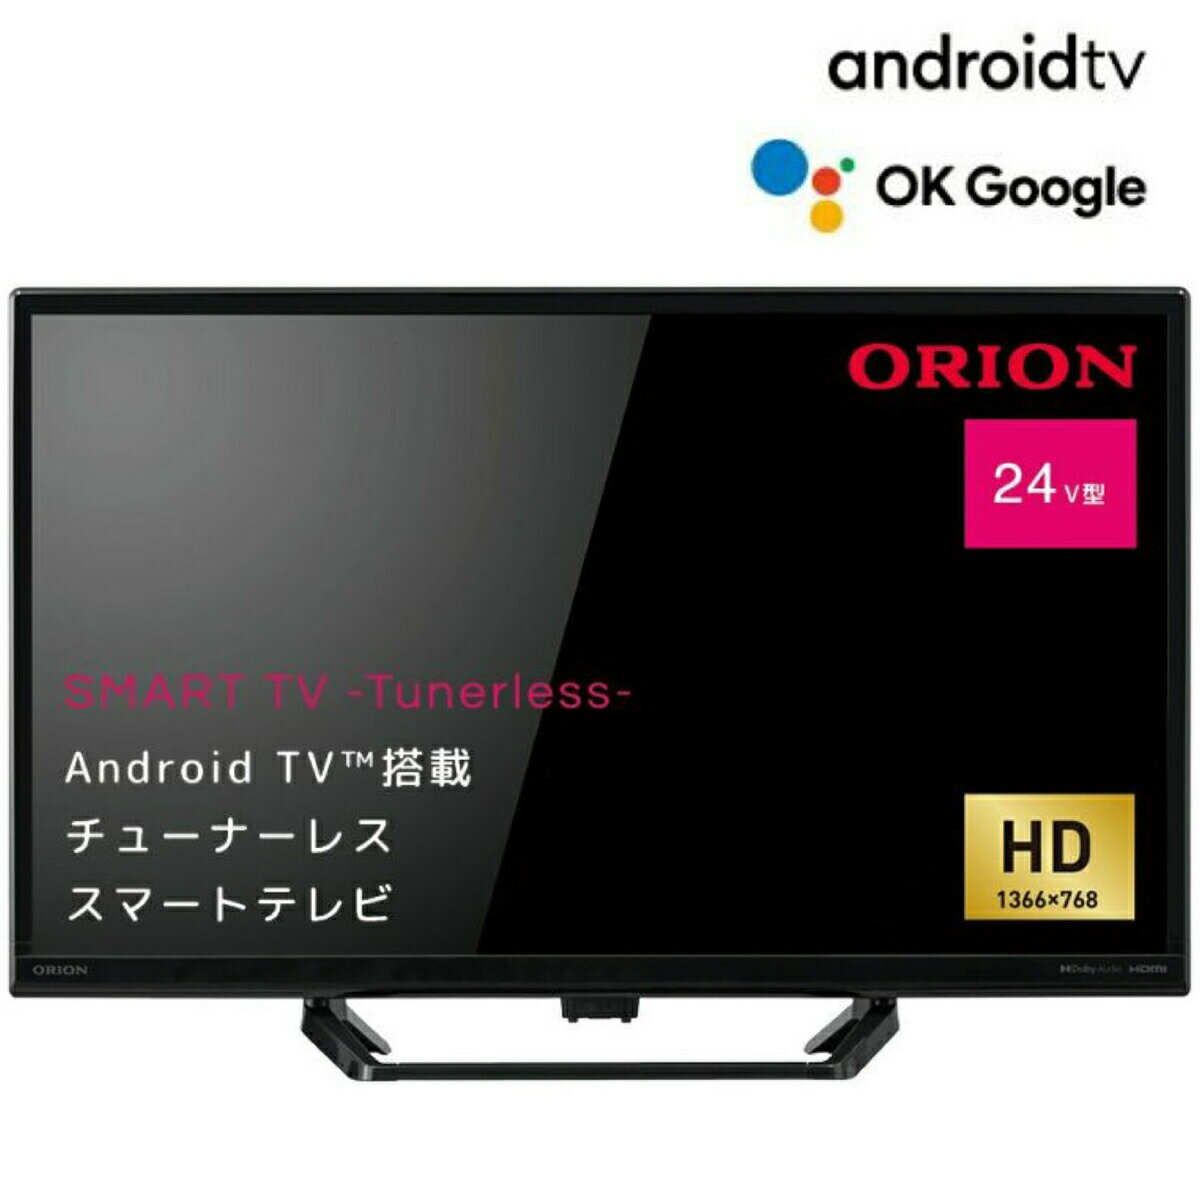 ORION SLHD241 AndroidTV 搭載 24型 スマートディスプレイ HD YouTube Netflix Amazon Prime Video Google Play リモコン TVチューナー非搭載 インターネット動画専用 スマートテレビ Android TV OS 11 アンドロイド ドウシシャ オリオン (M)